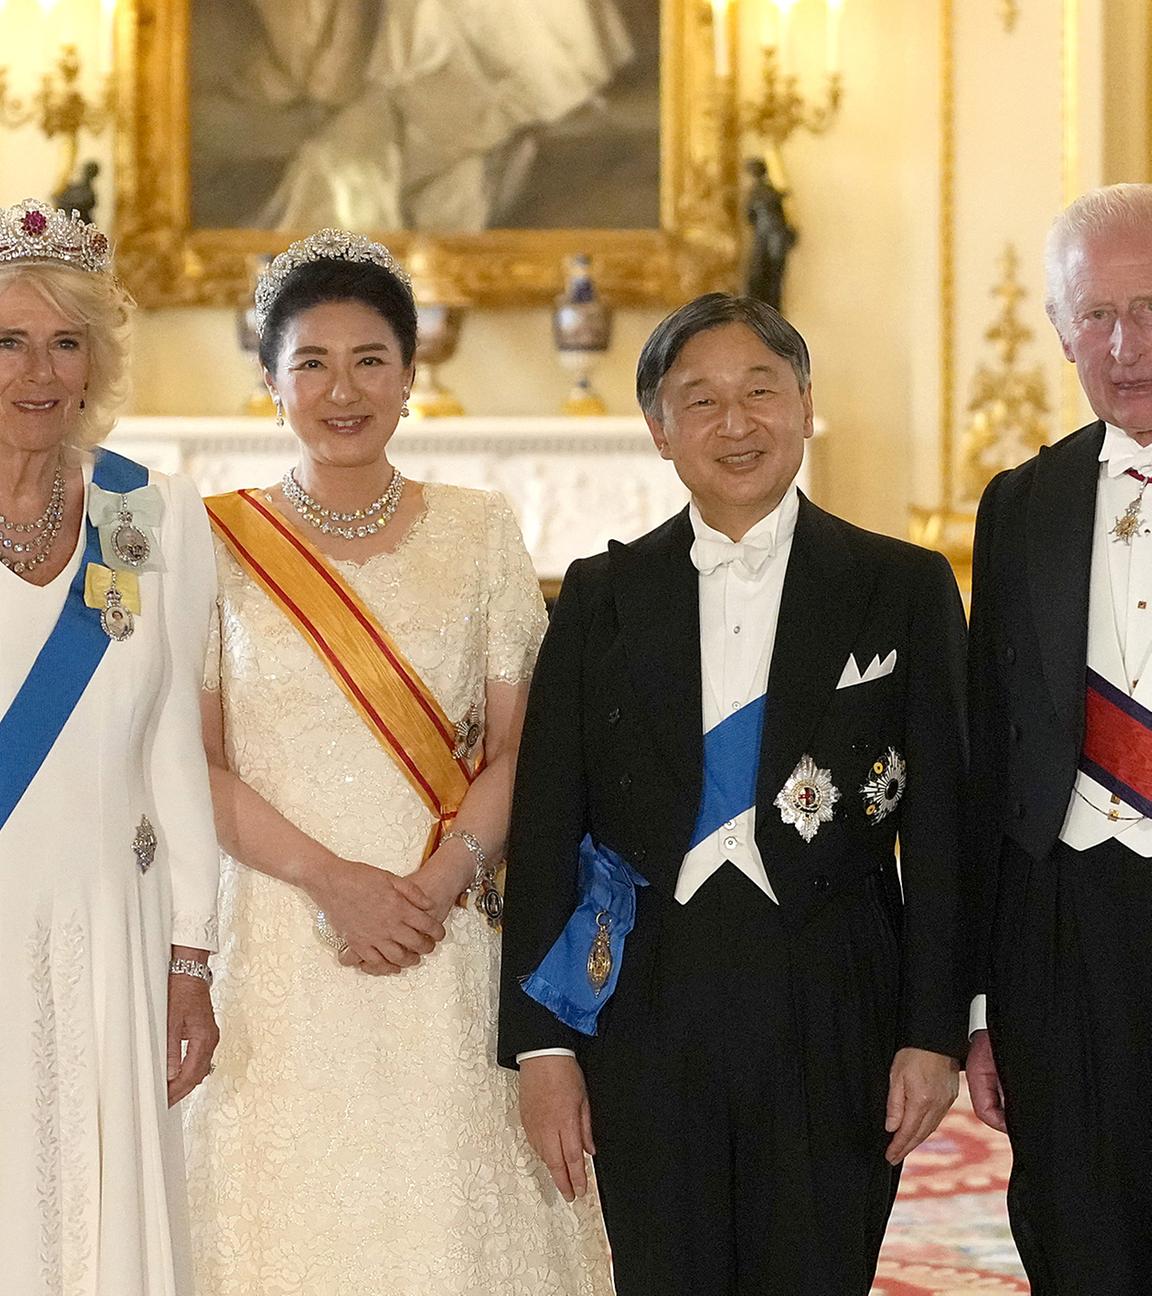 König Charles III. (r) von Großbritannien und seine Frau Königin Camilla (l) begrüßen den Kaiser Naruhito von Japan und dessen Frau, Kaiserin Masako von Japan